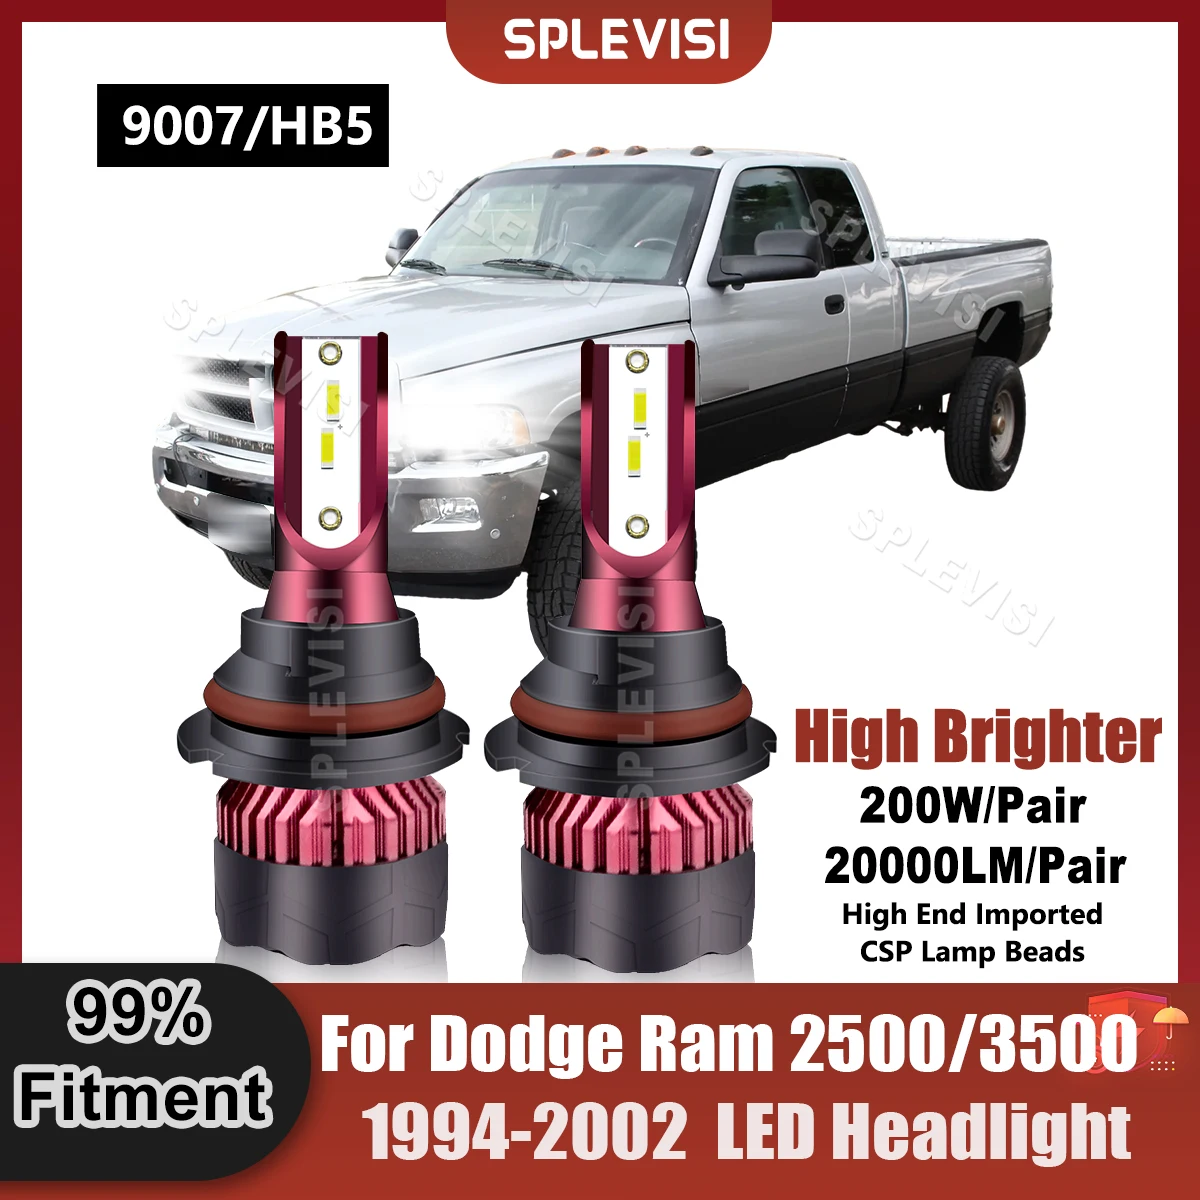 

Универсальные автомобильные лампы головного света 9007/HB5, Ксеноновые белые лампы для Dodge Ram 2500/3500 1994 1995 1996 1997 1998 1999 2000 2001 2002